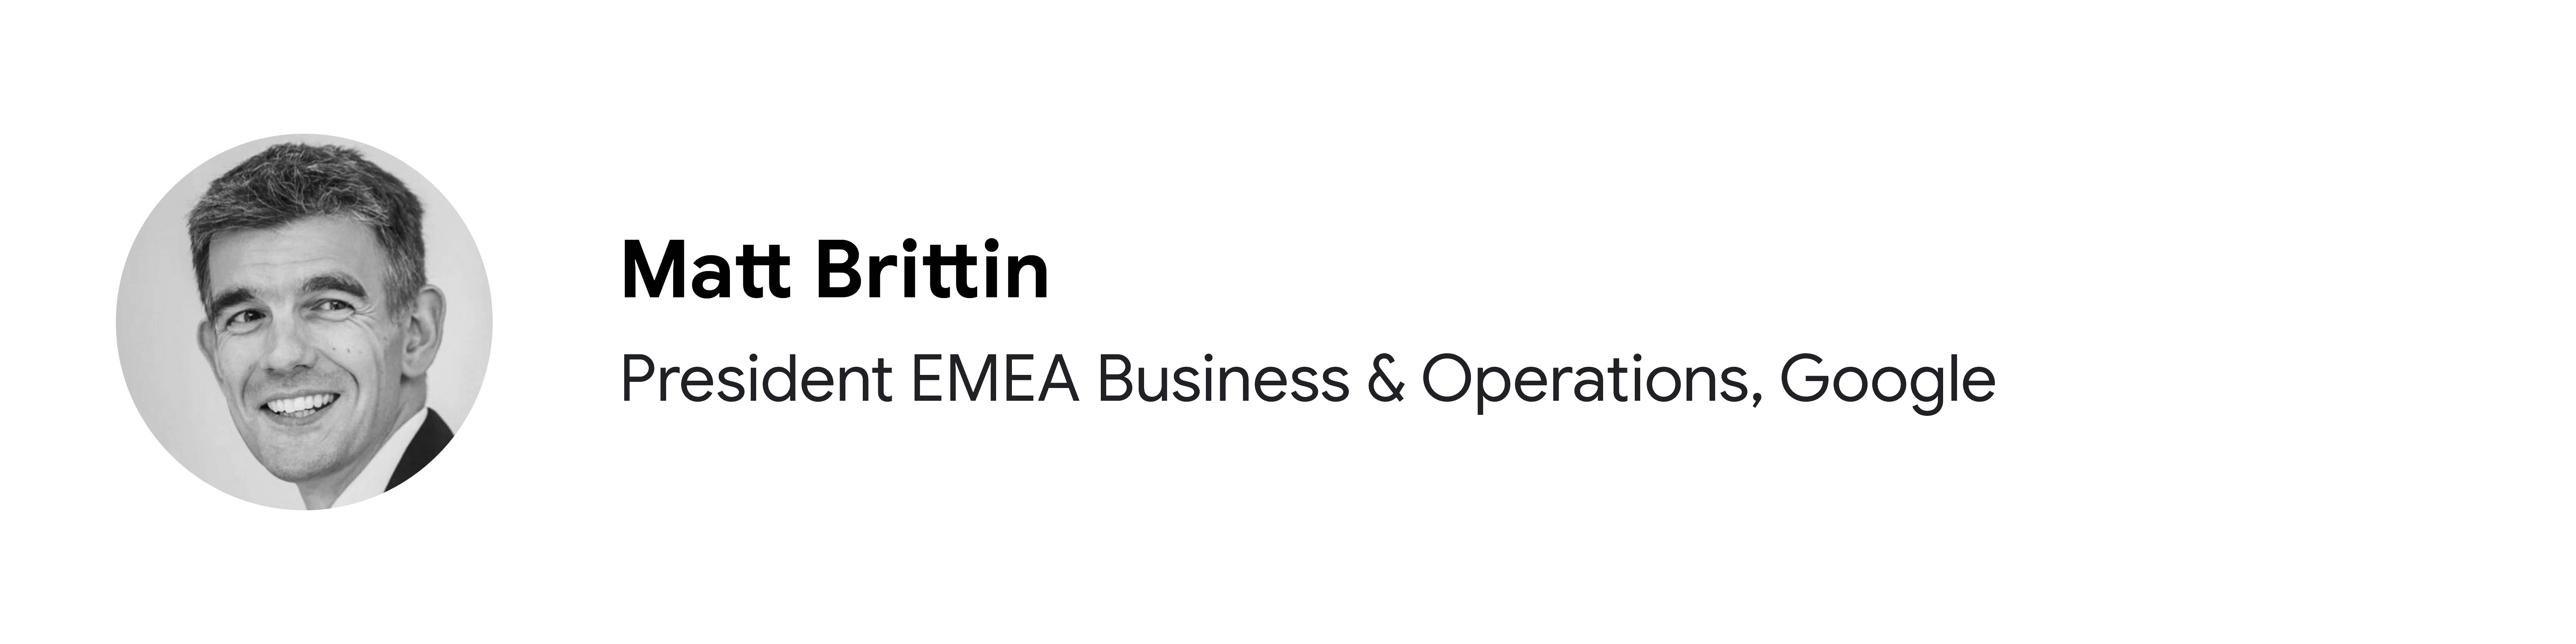 Google'da President EMEA Business & Operations pozisyonunda görev yapan katılımcı Matt Brittin'in siyah beyaz portre fotoğrafı